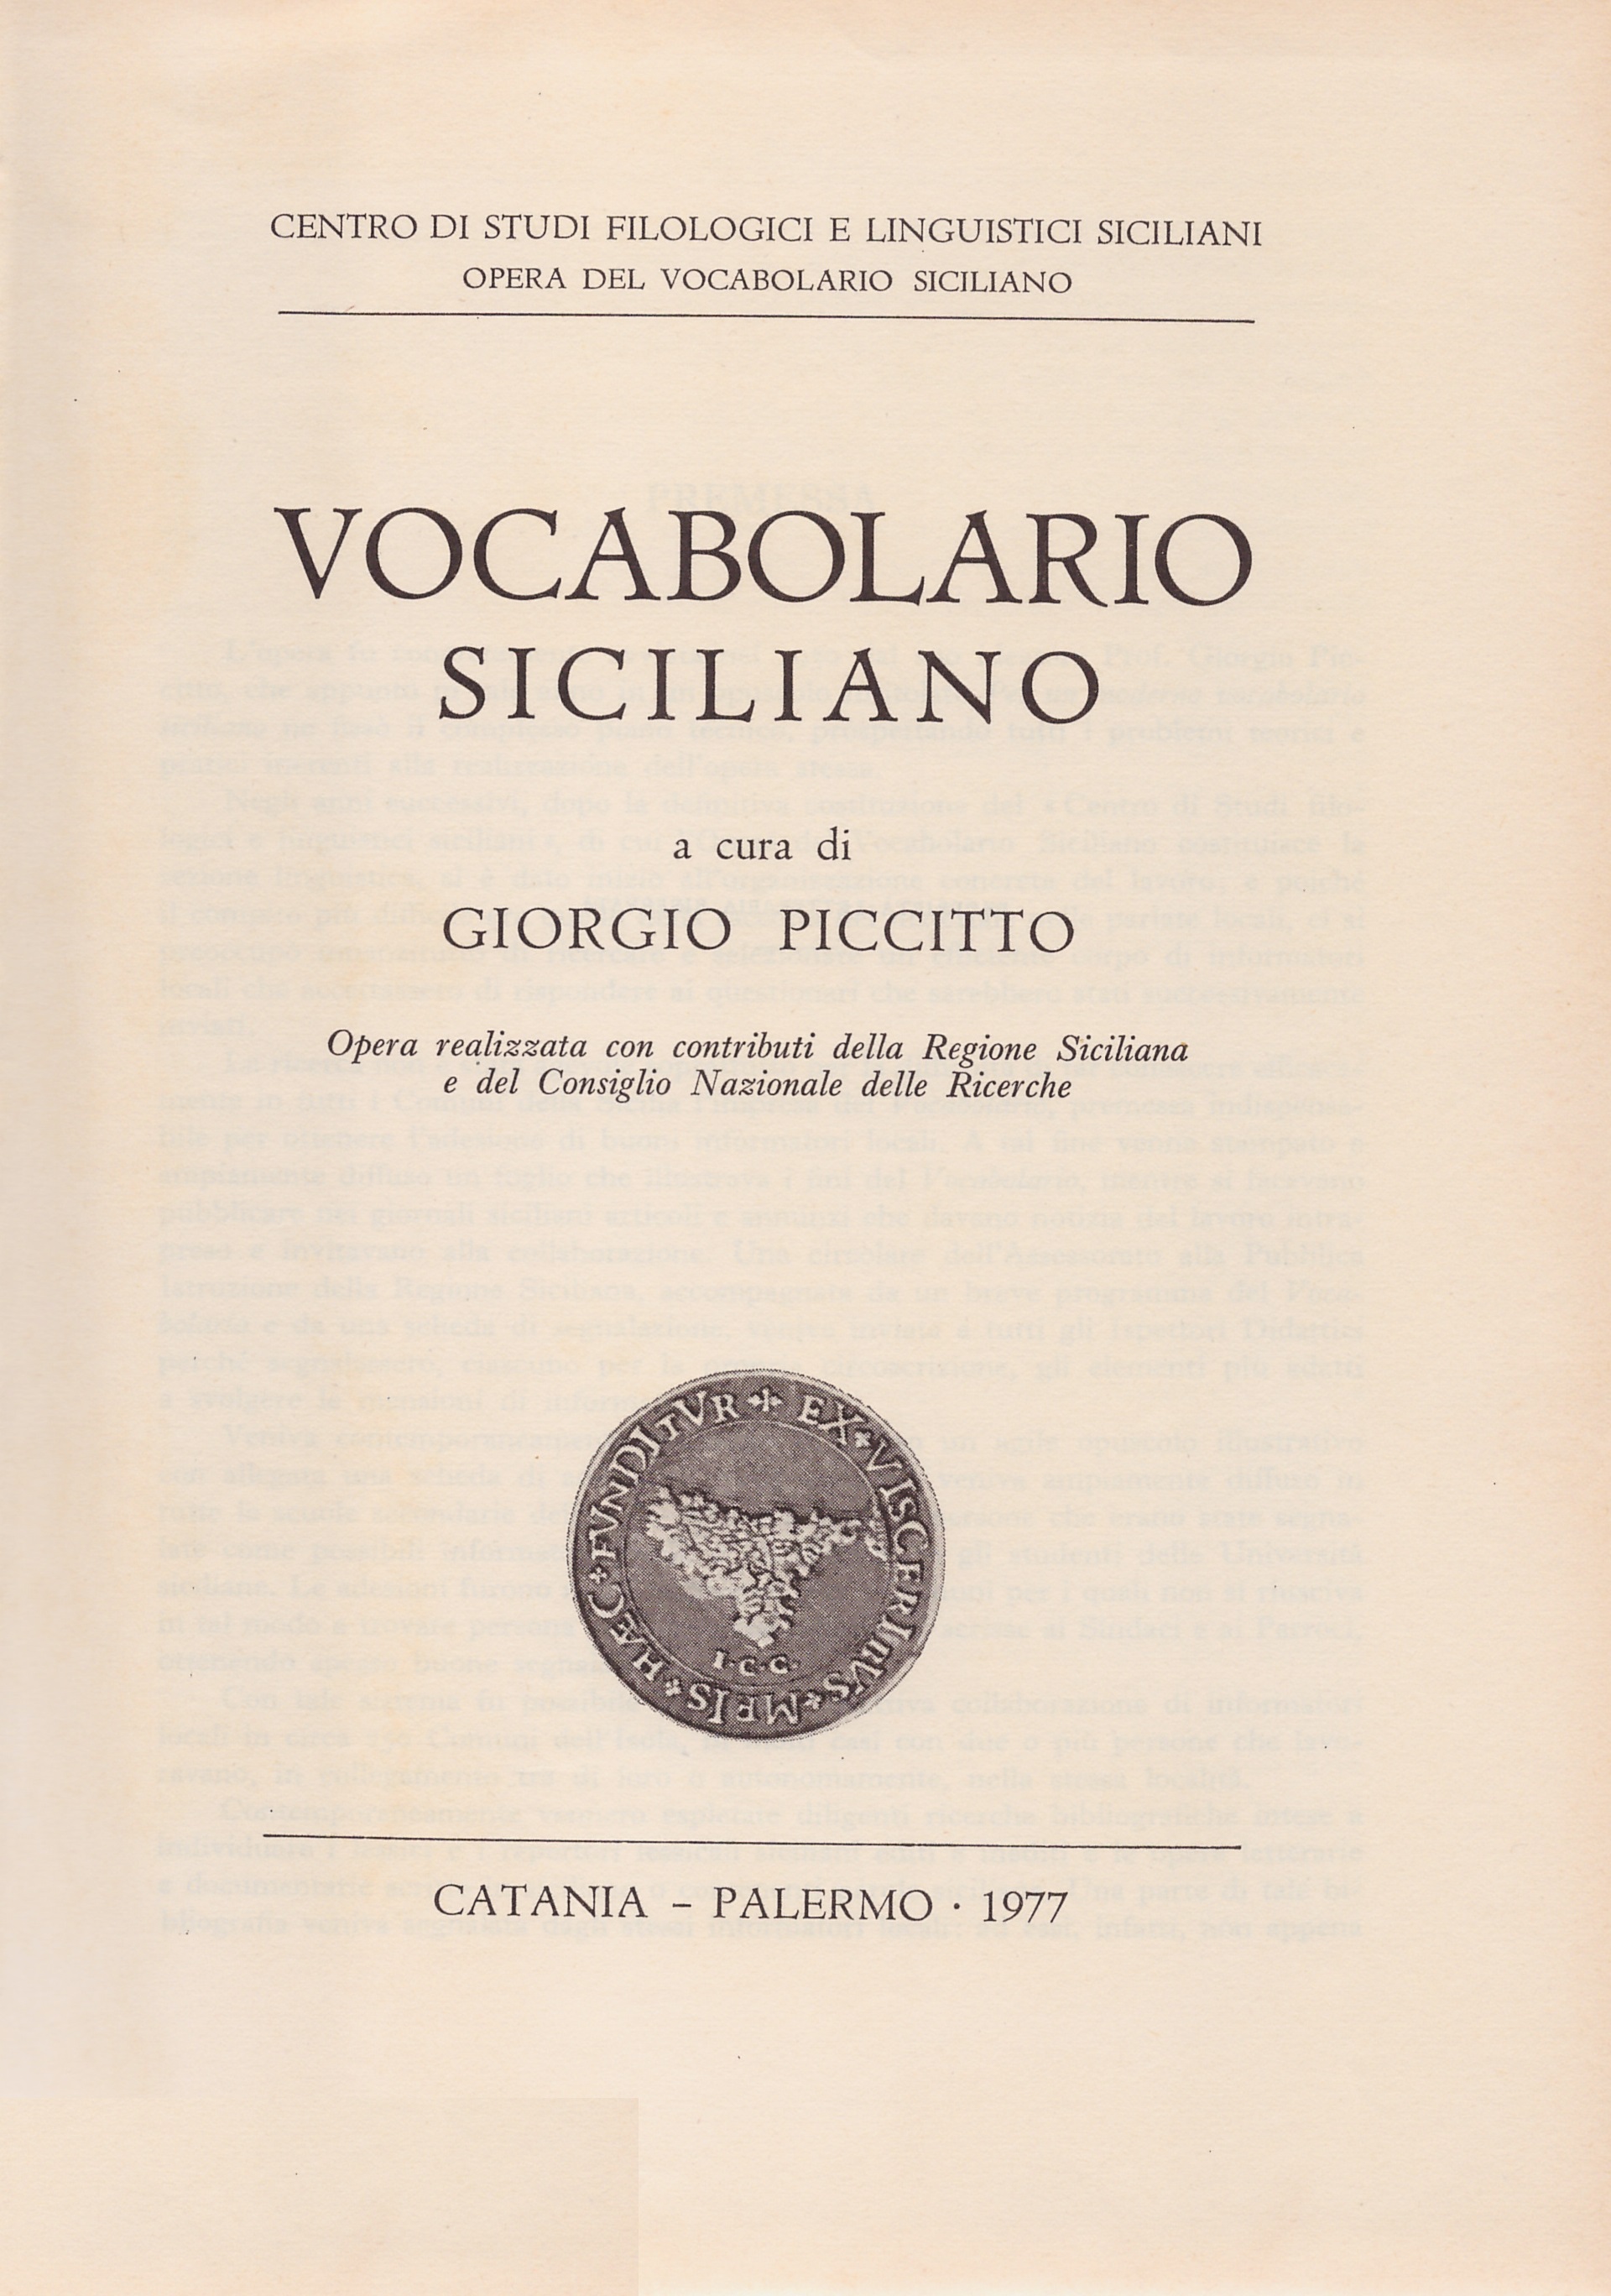 Vocabolario italiano-siciliano - Dario Flaccovio Editore